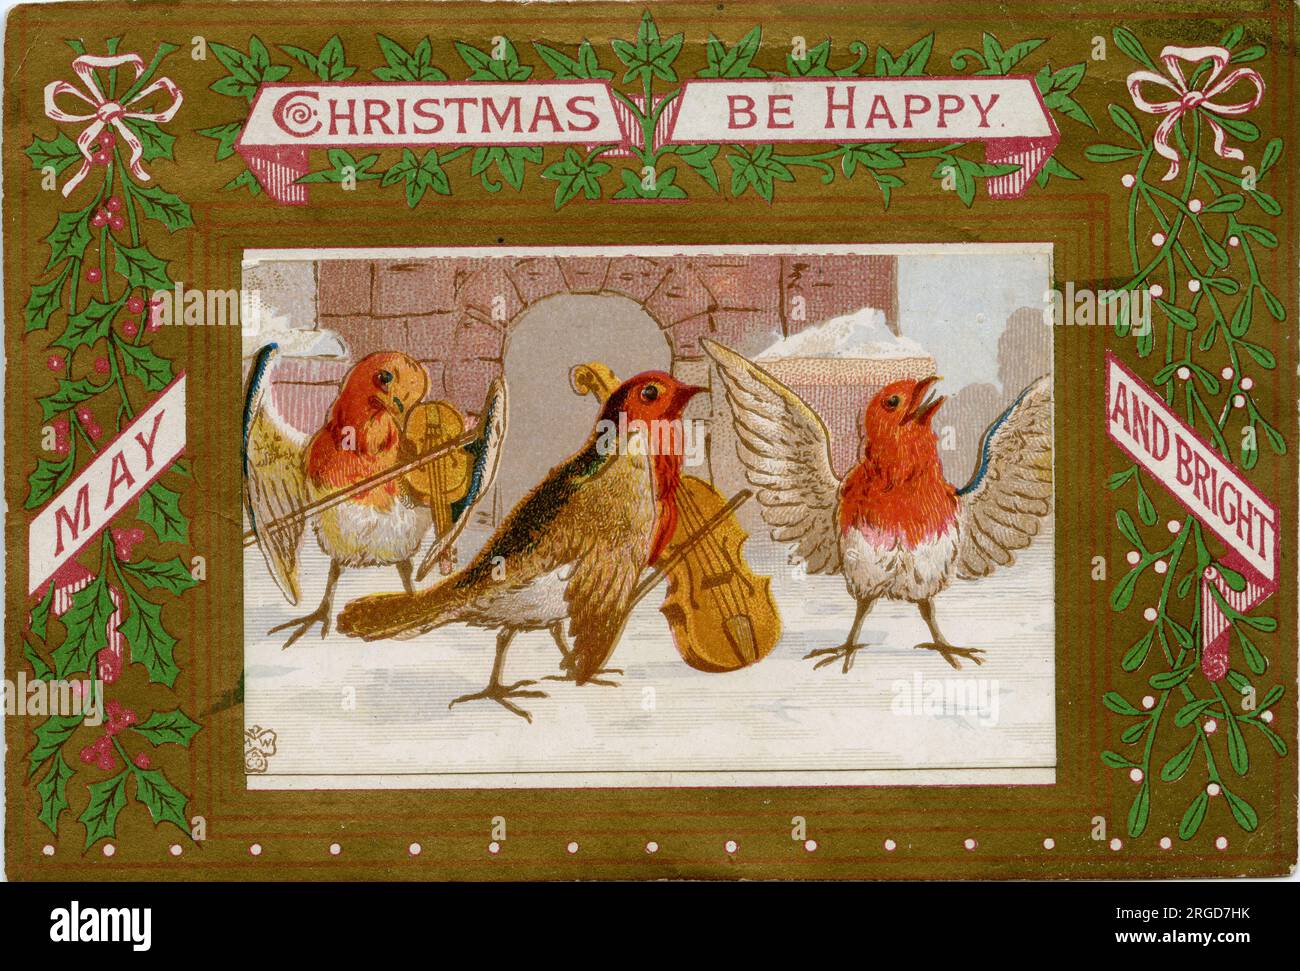 Viktorianische Weihnachtskarte, Robin Orchestra spielt im Schnee - May Christmas be happy and bright Stockfoto